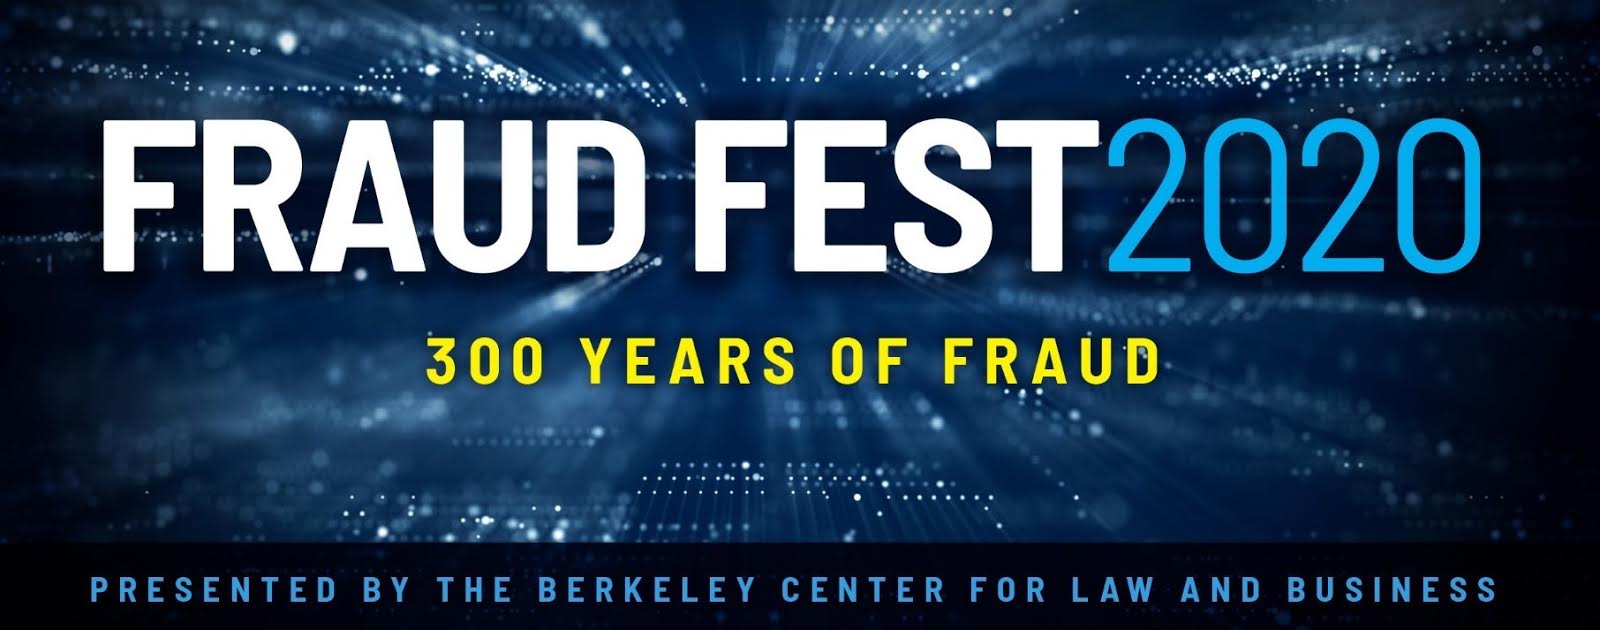 Fraud Fest 2020: 300 Years of Fraud